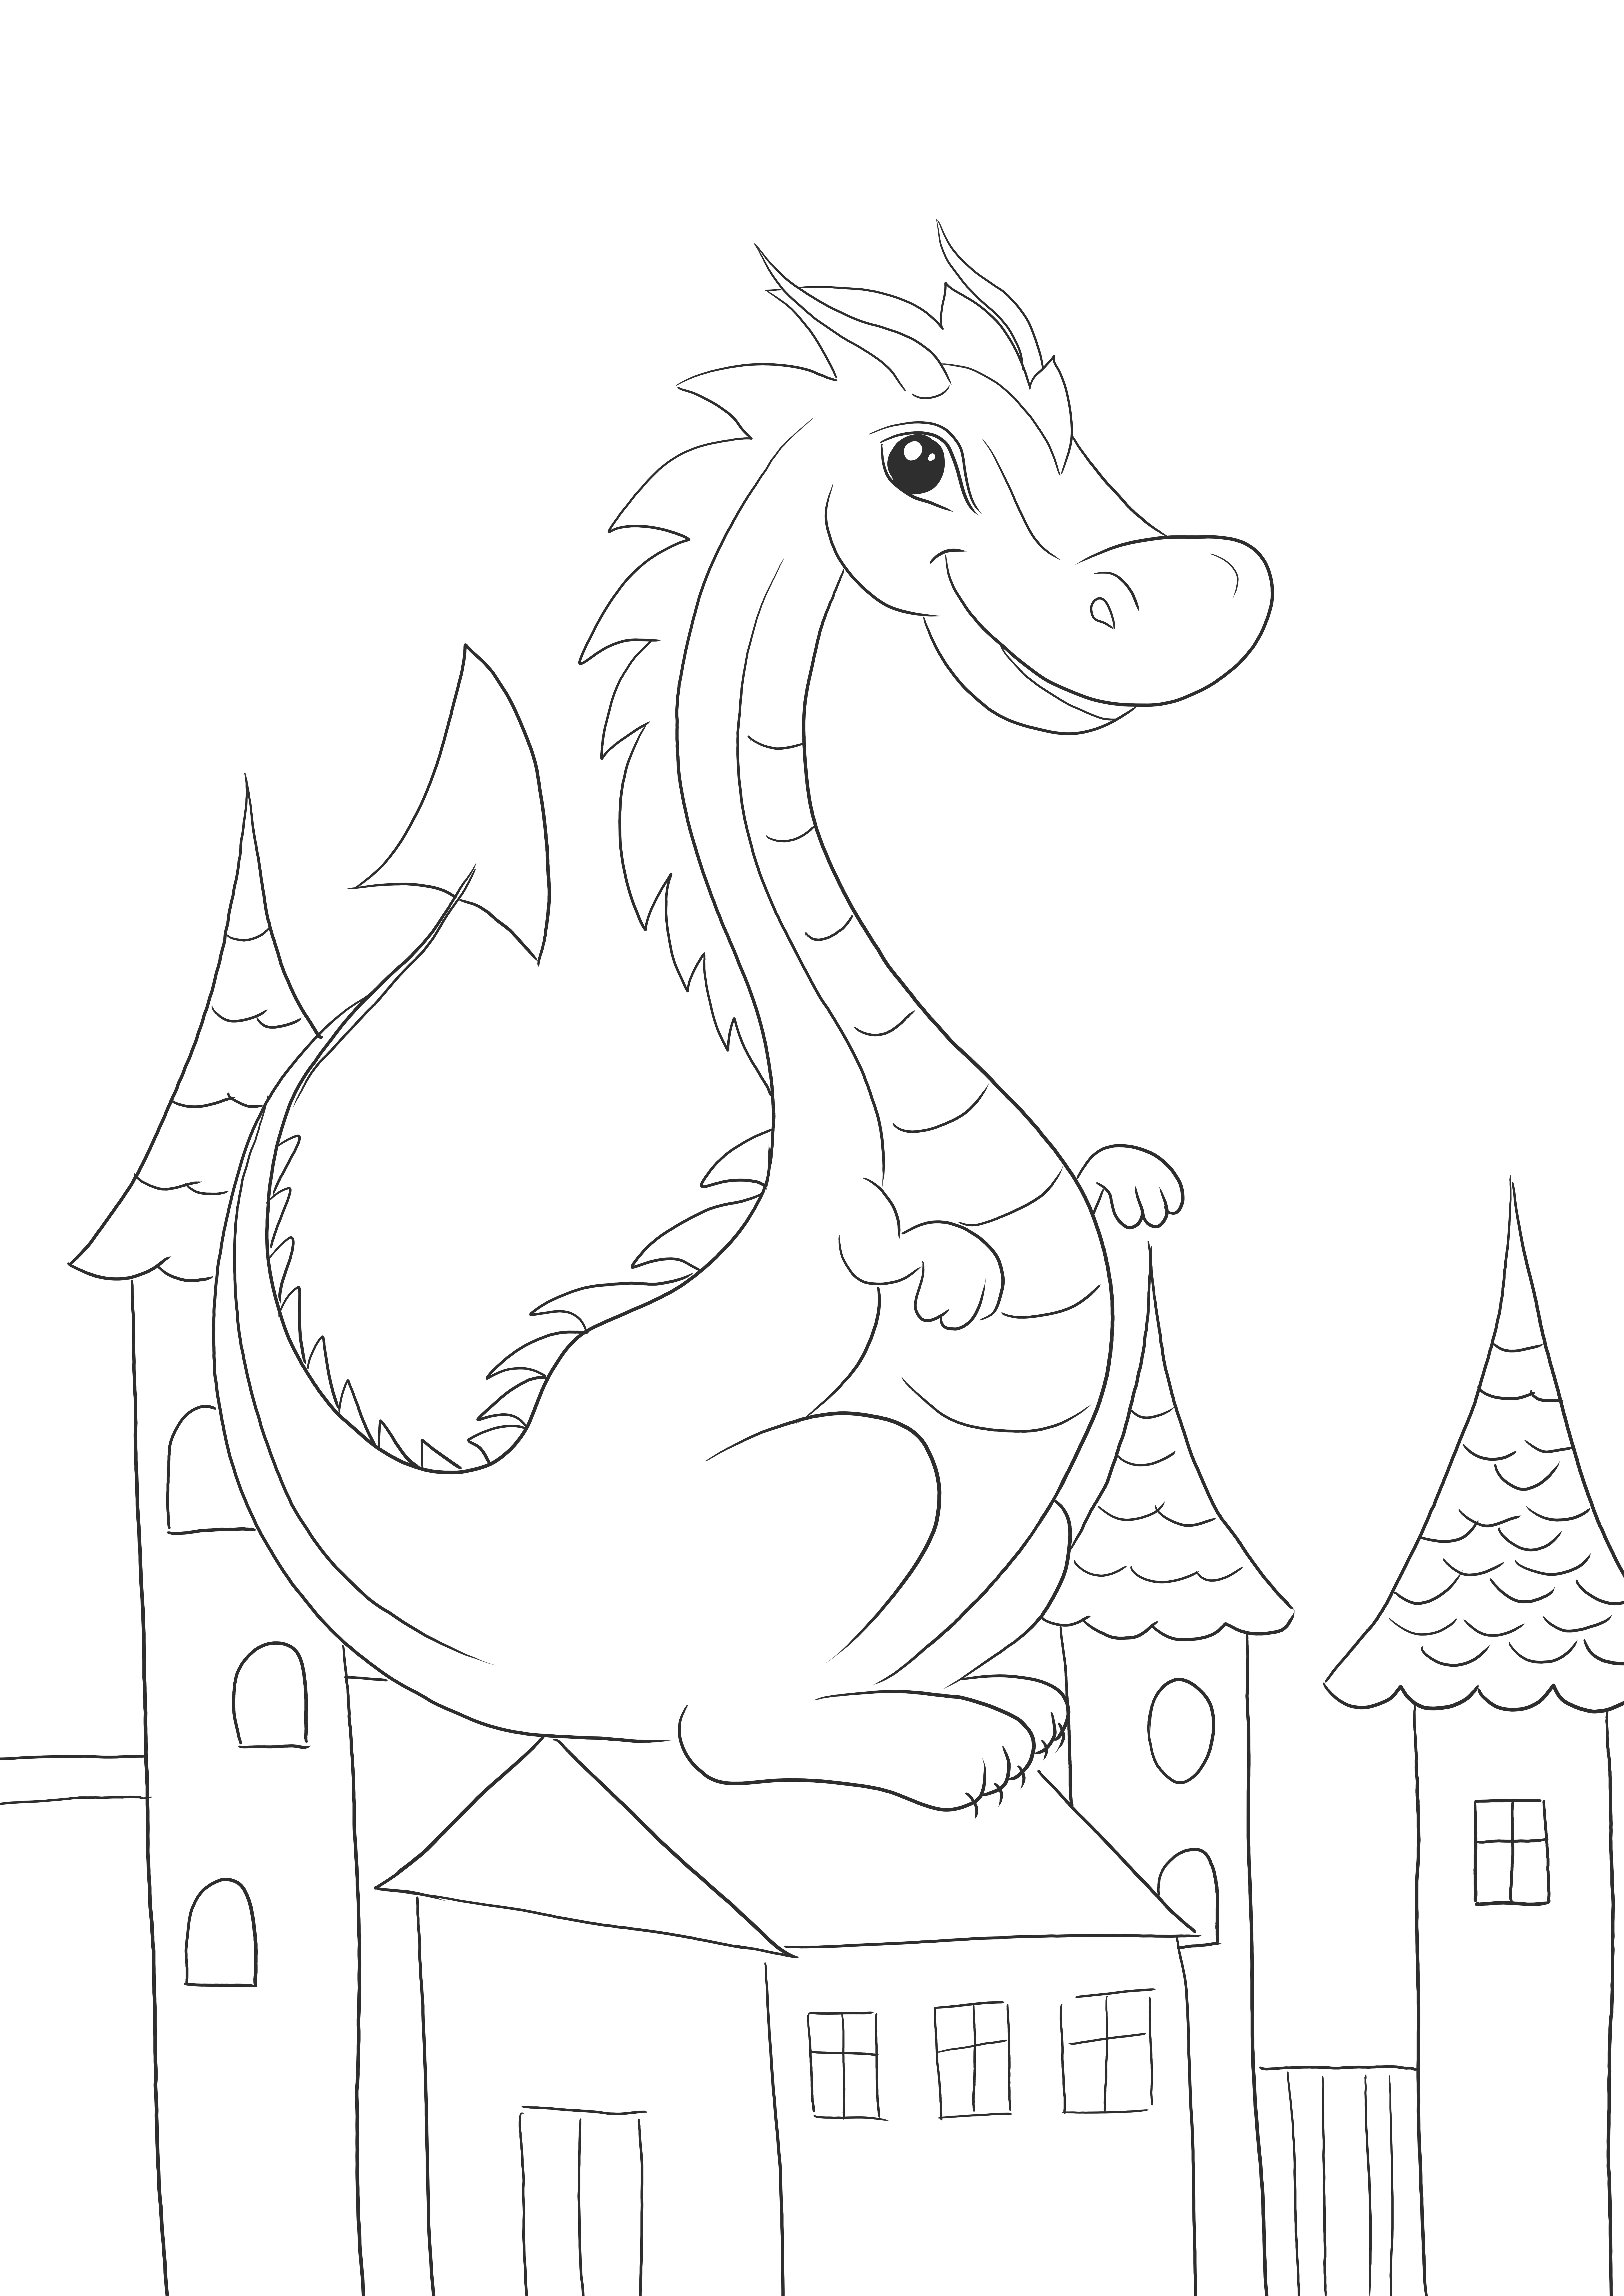 Dragon drăguț de imprimat și colorat gratuit pentru copii de toate vârstele